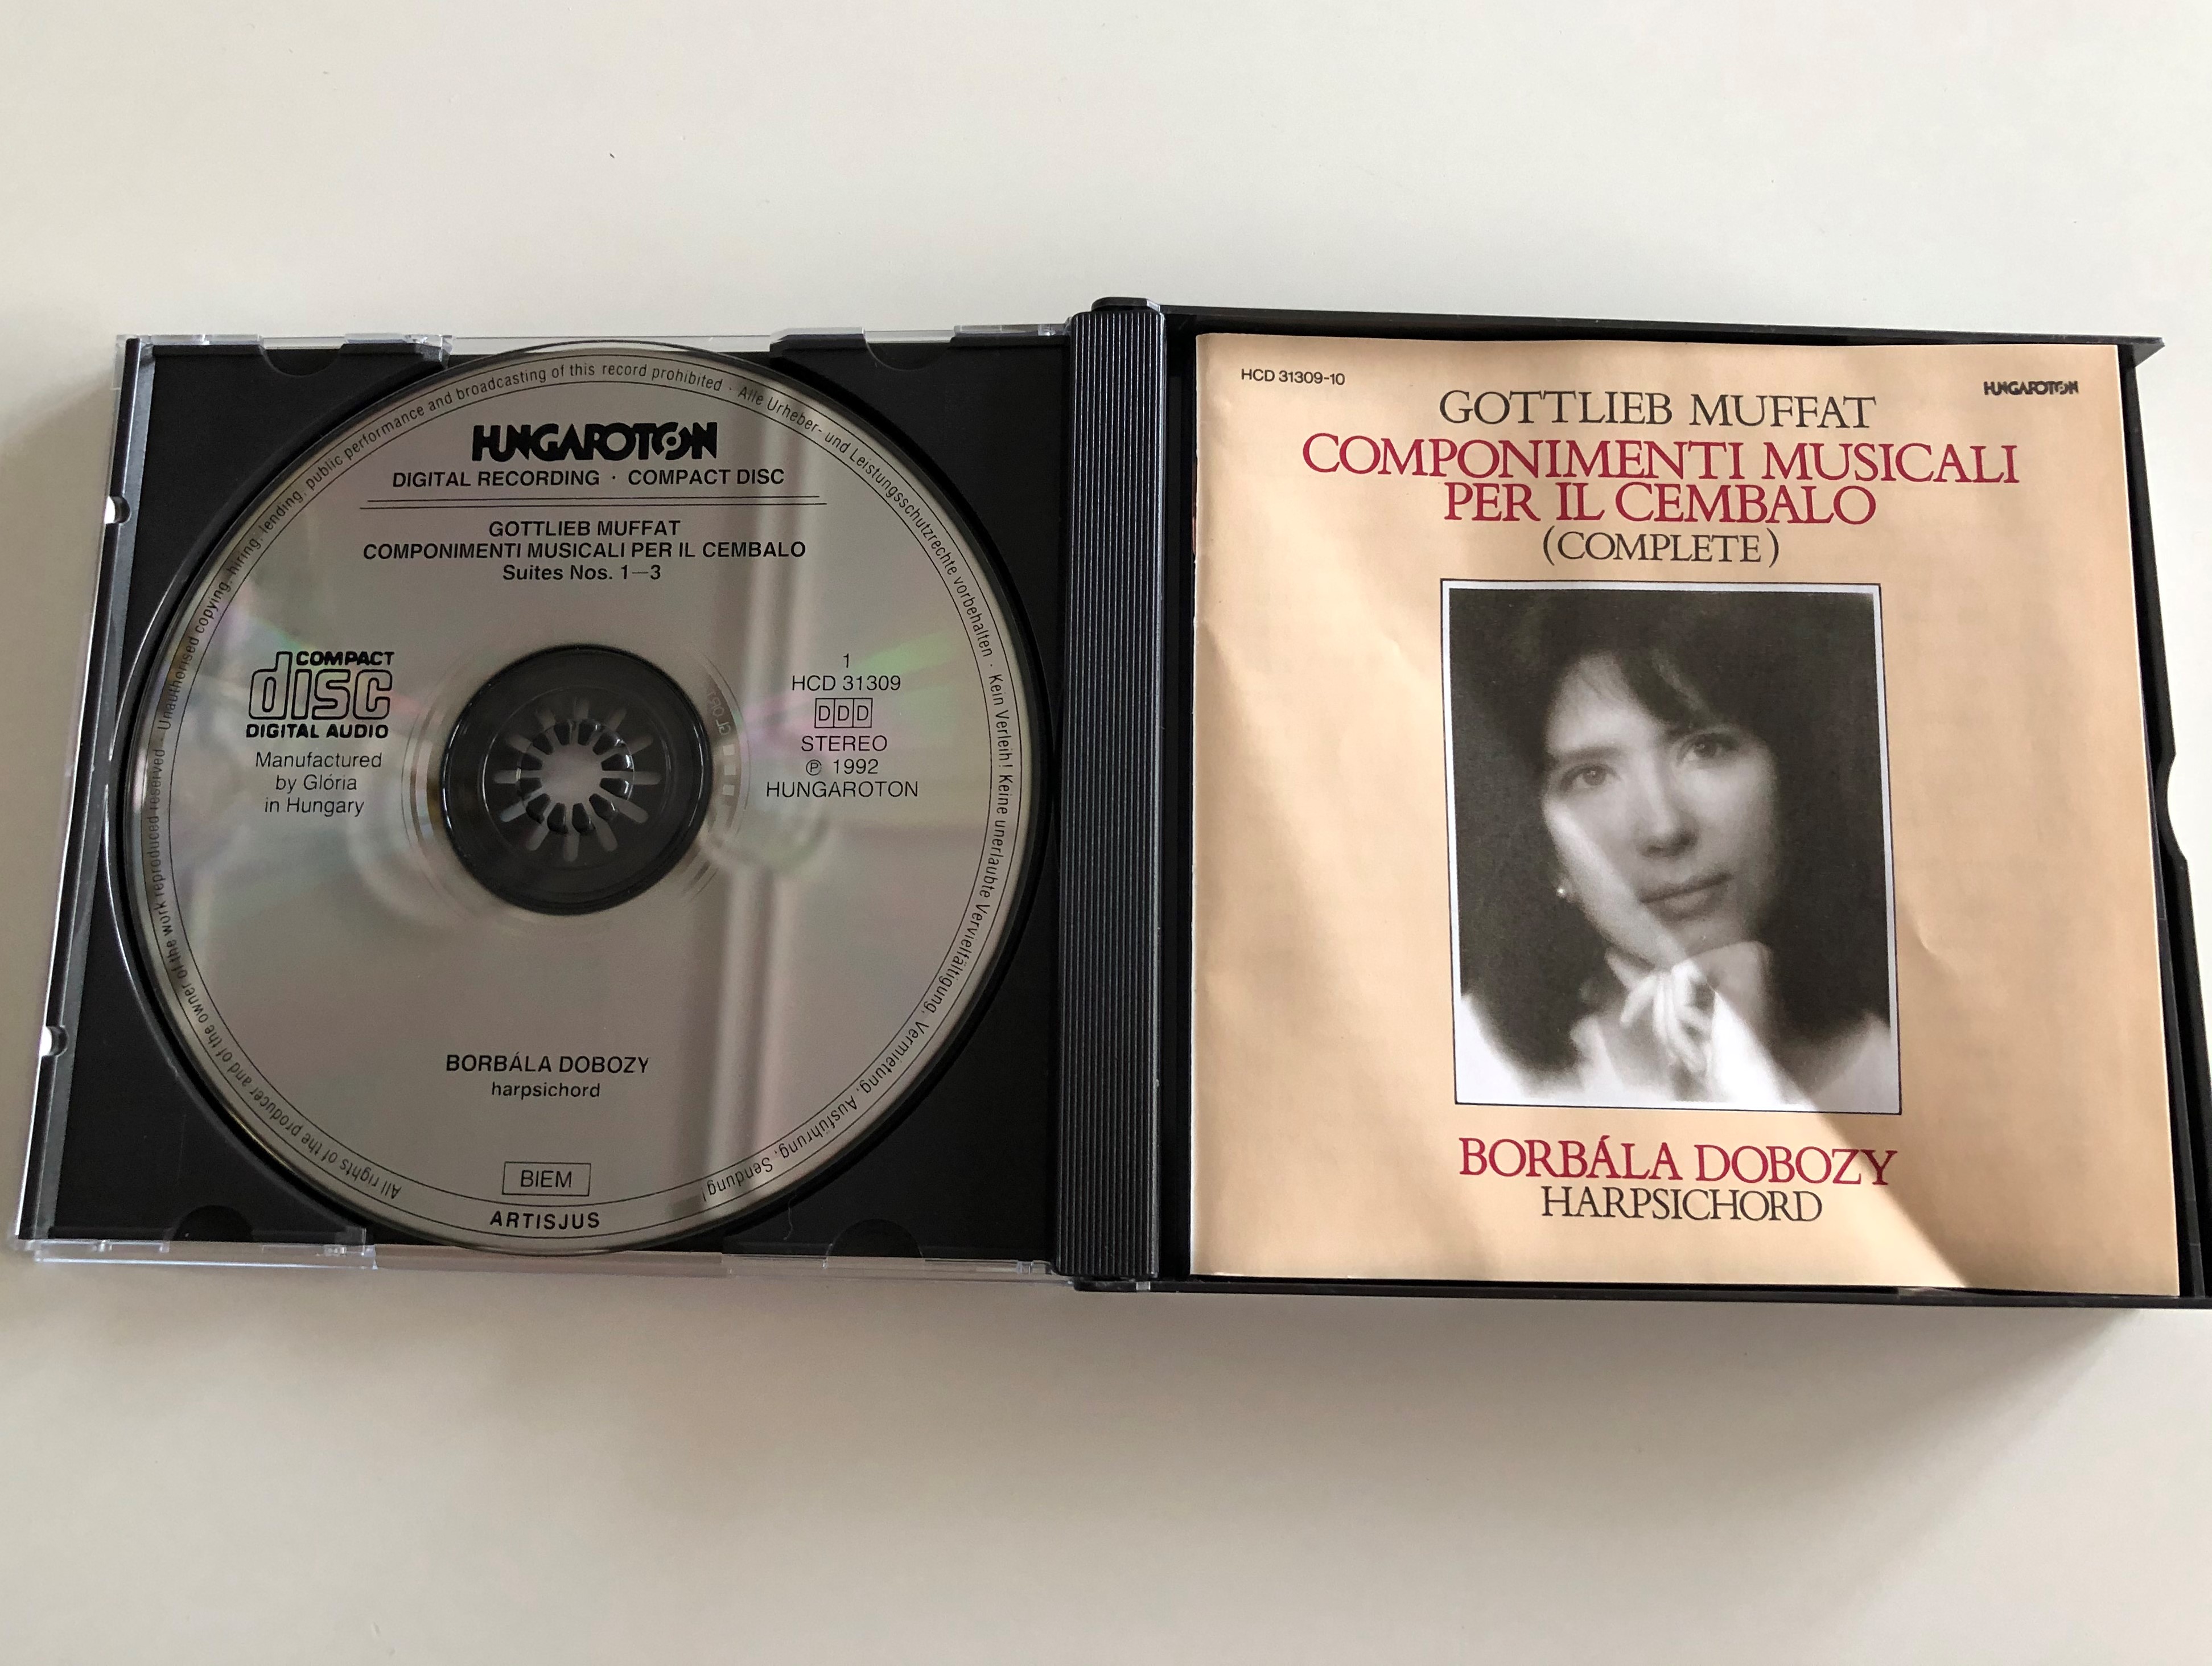 gottlieb-muffat-componimenti-musicali-per-il-cembalo-complete-borbala-dobozy-harpsichord-hungaroton-2x-audio-cd-1992-stereo-hcd-31309-10-2-.jpg